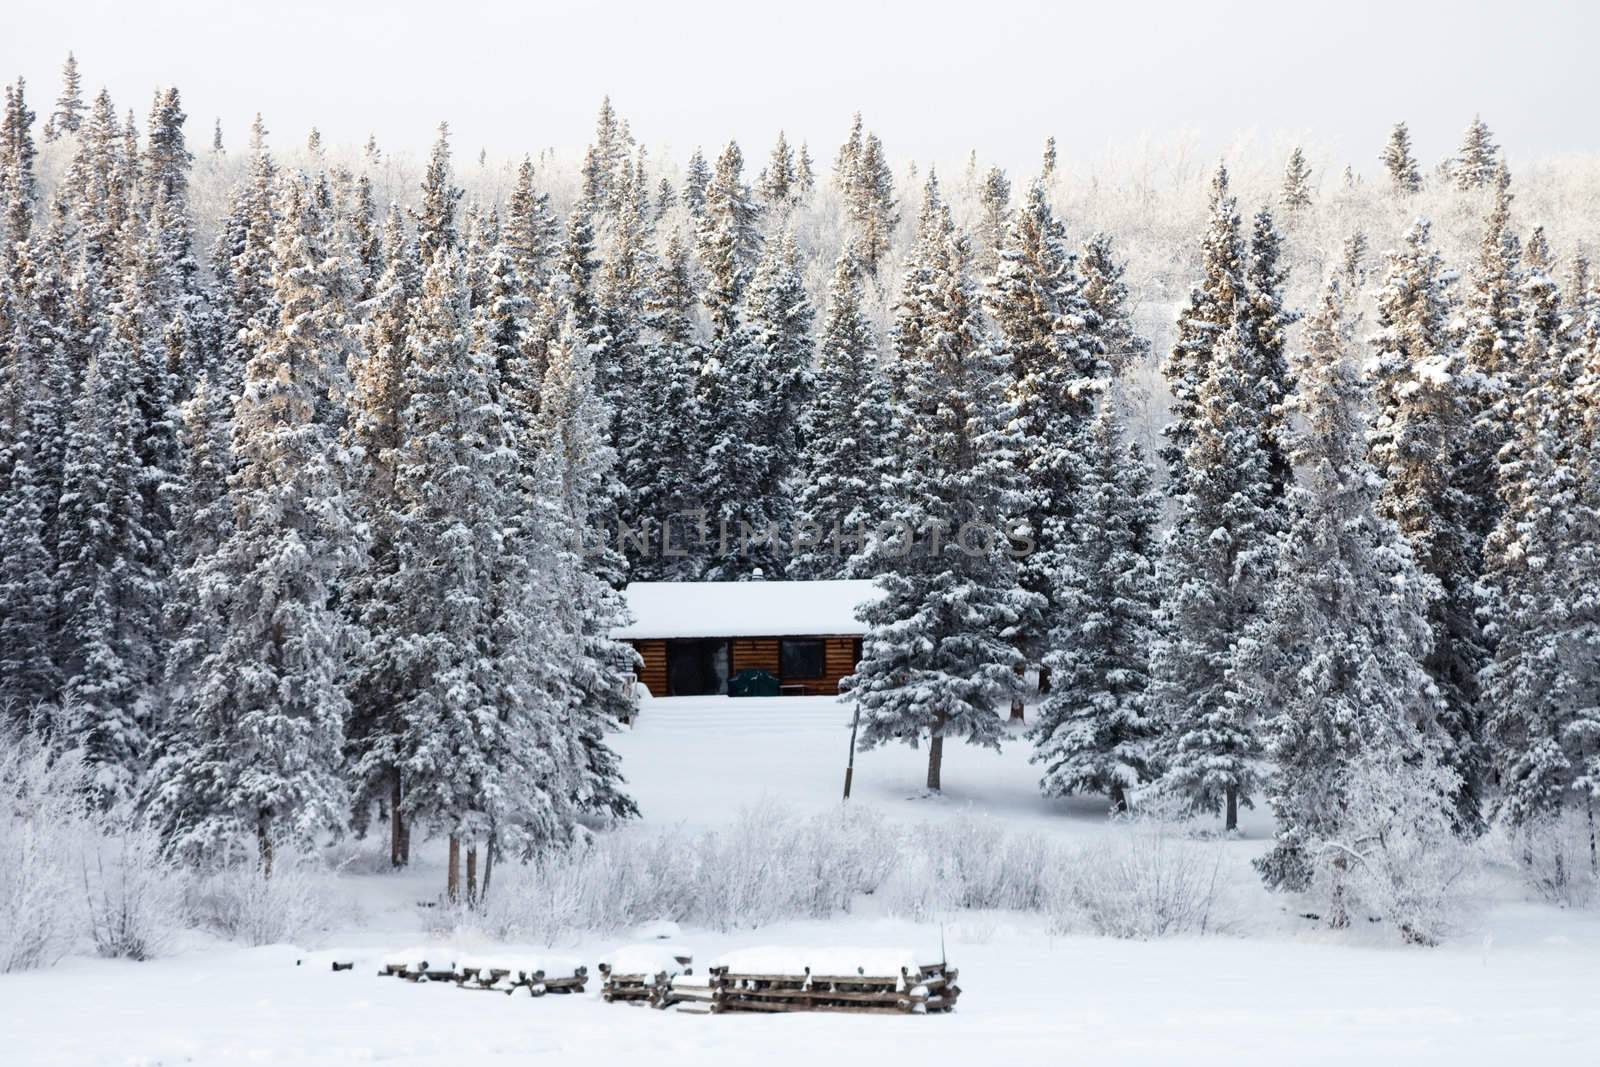 Winter cabin on frozen lake shore by PiLens